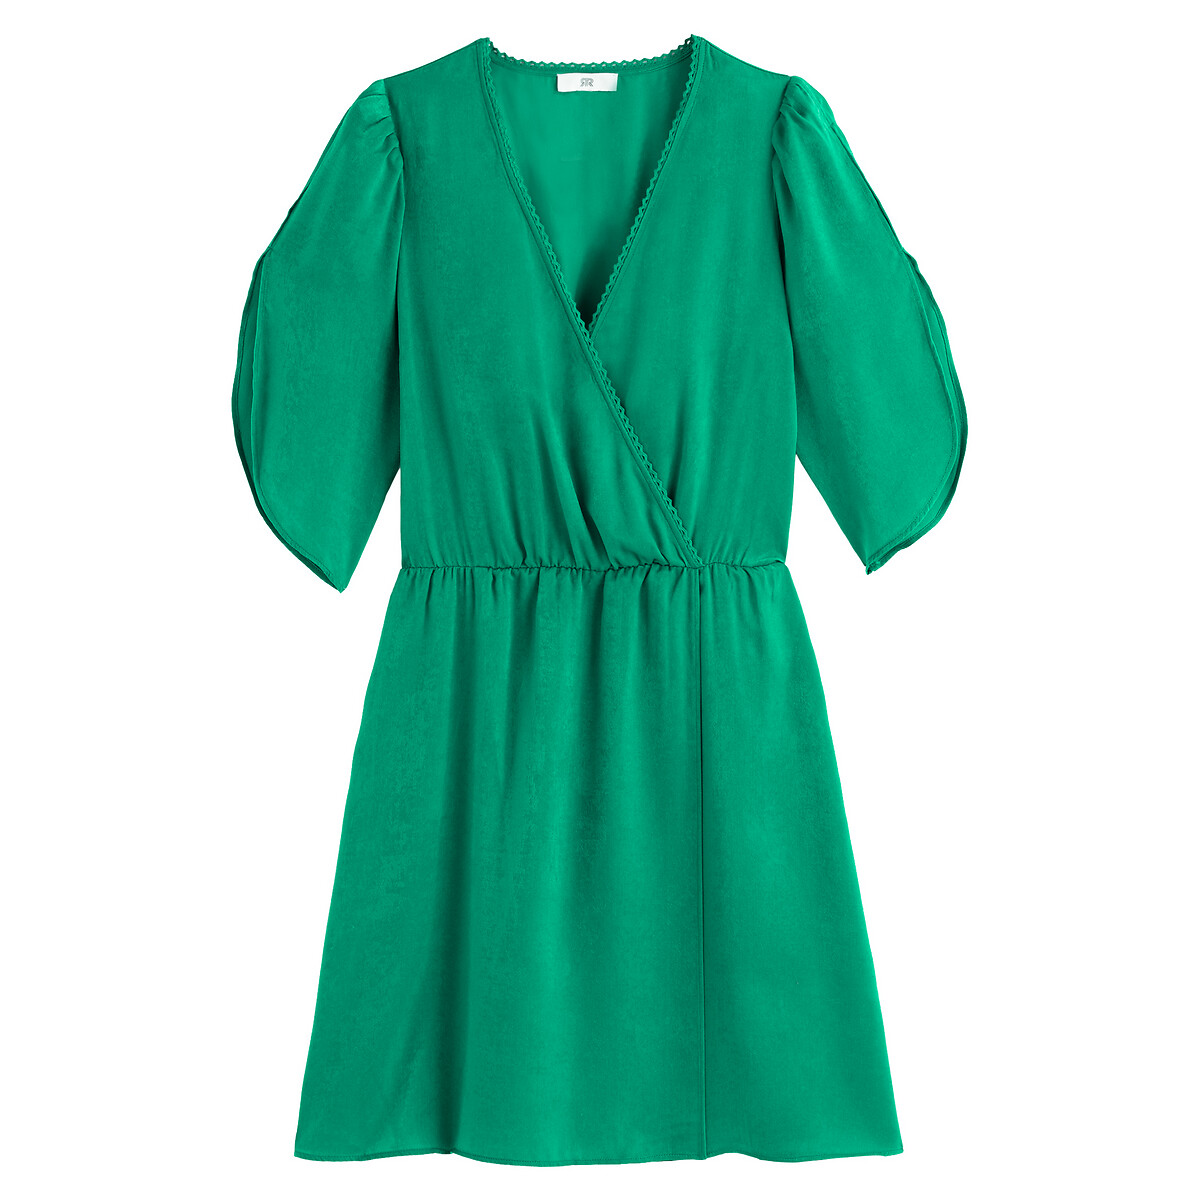 Платье LaRedoute Короткое с запахом короткие рукава 36 (FR) - 42 (RUS) зеленый, размер 36 (FR) - 42 (RUS) Короткое с запахом короткие рукава 36 (FR) - 42 (RUS) зеленый - фото 5